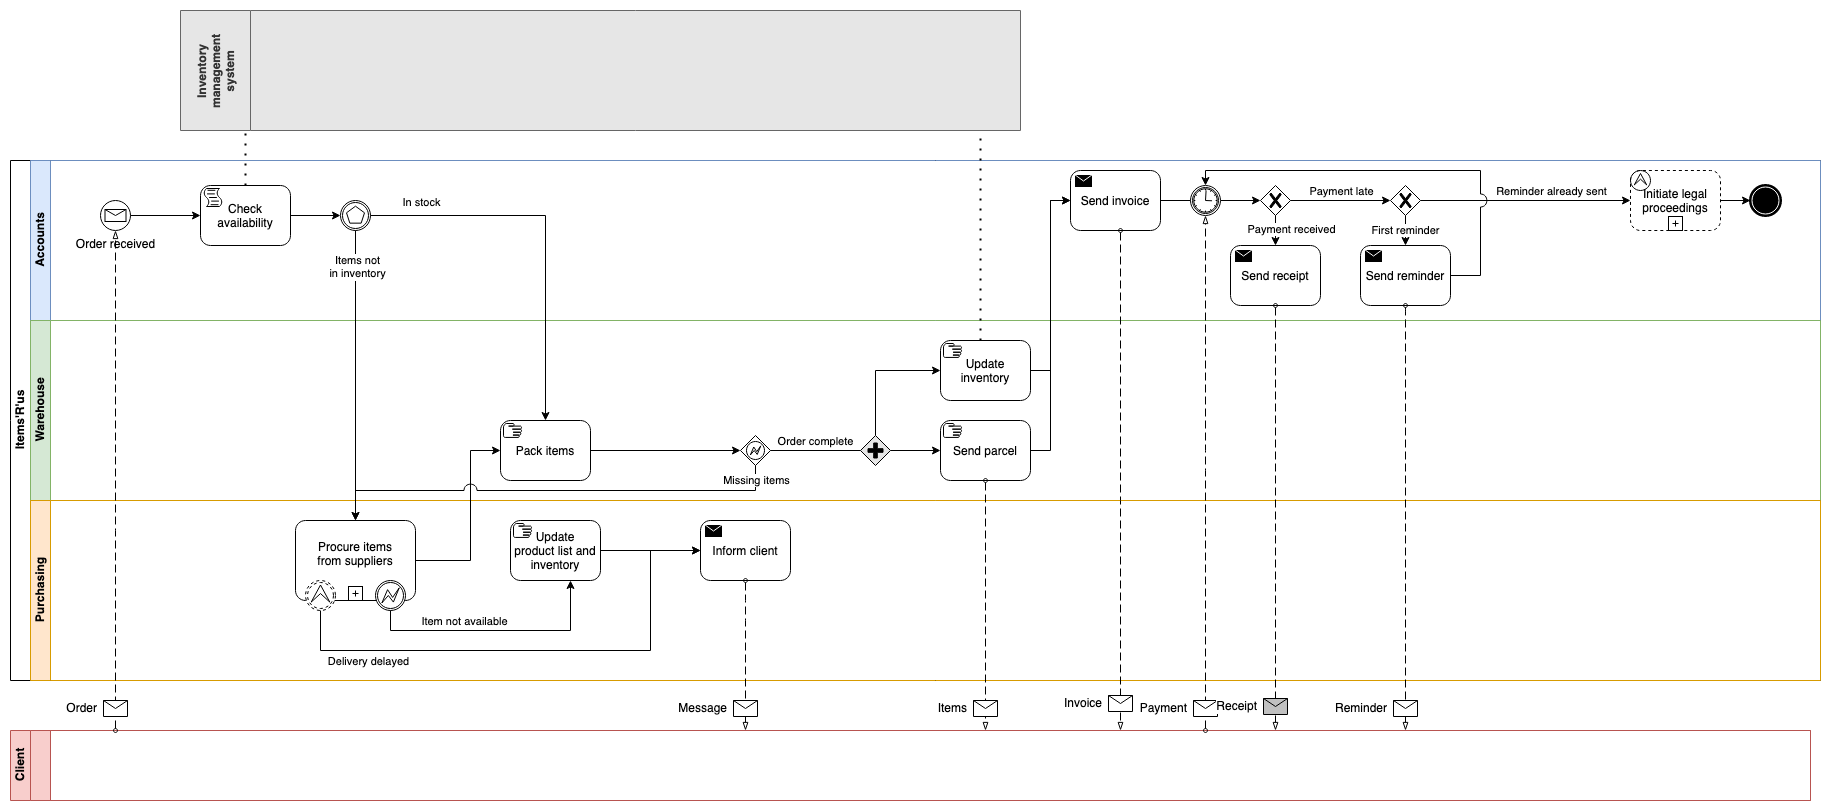 一个示例 BPMN 图，详细说明了处理订单所涉及的步骤